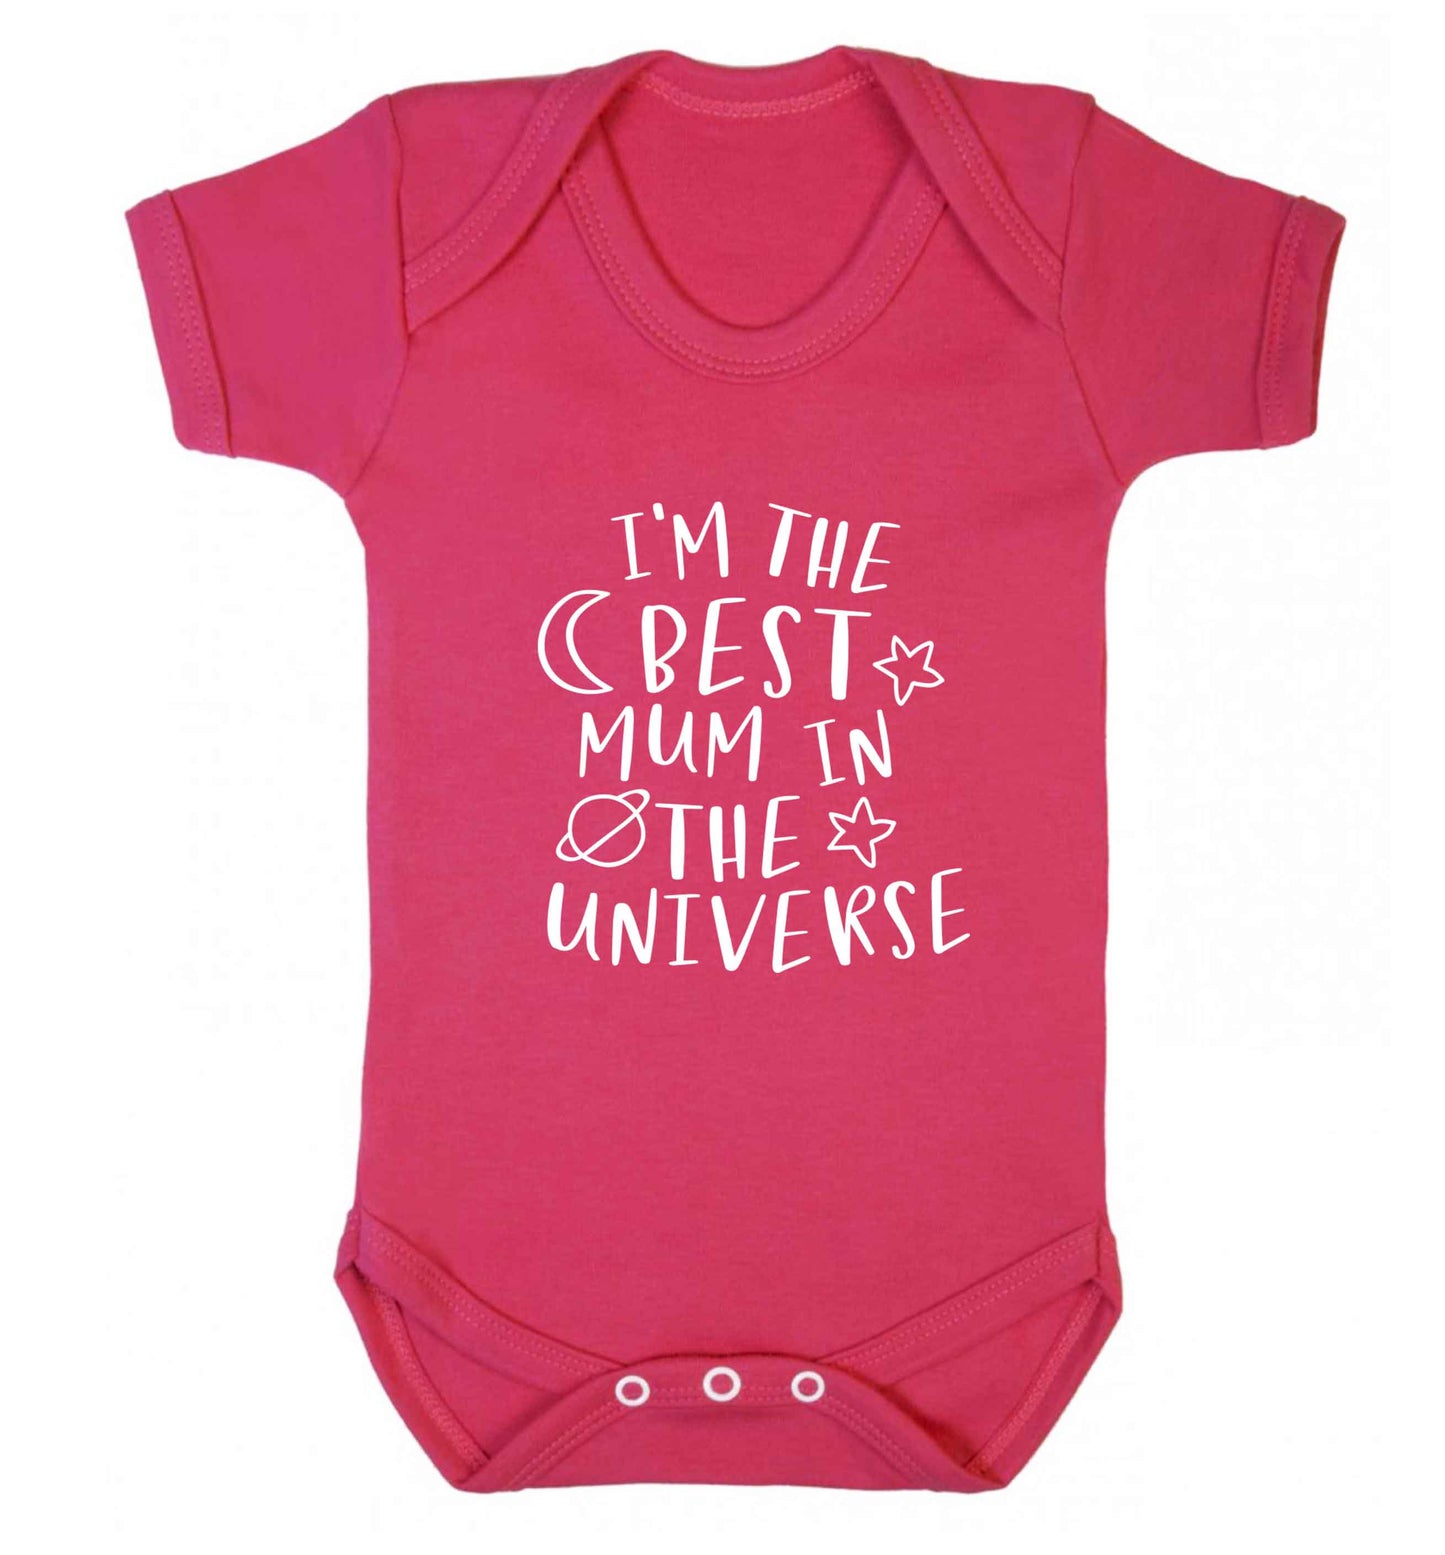 I'm the best mum in the universe baby vest dark pink 18-24 months